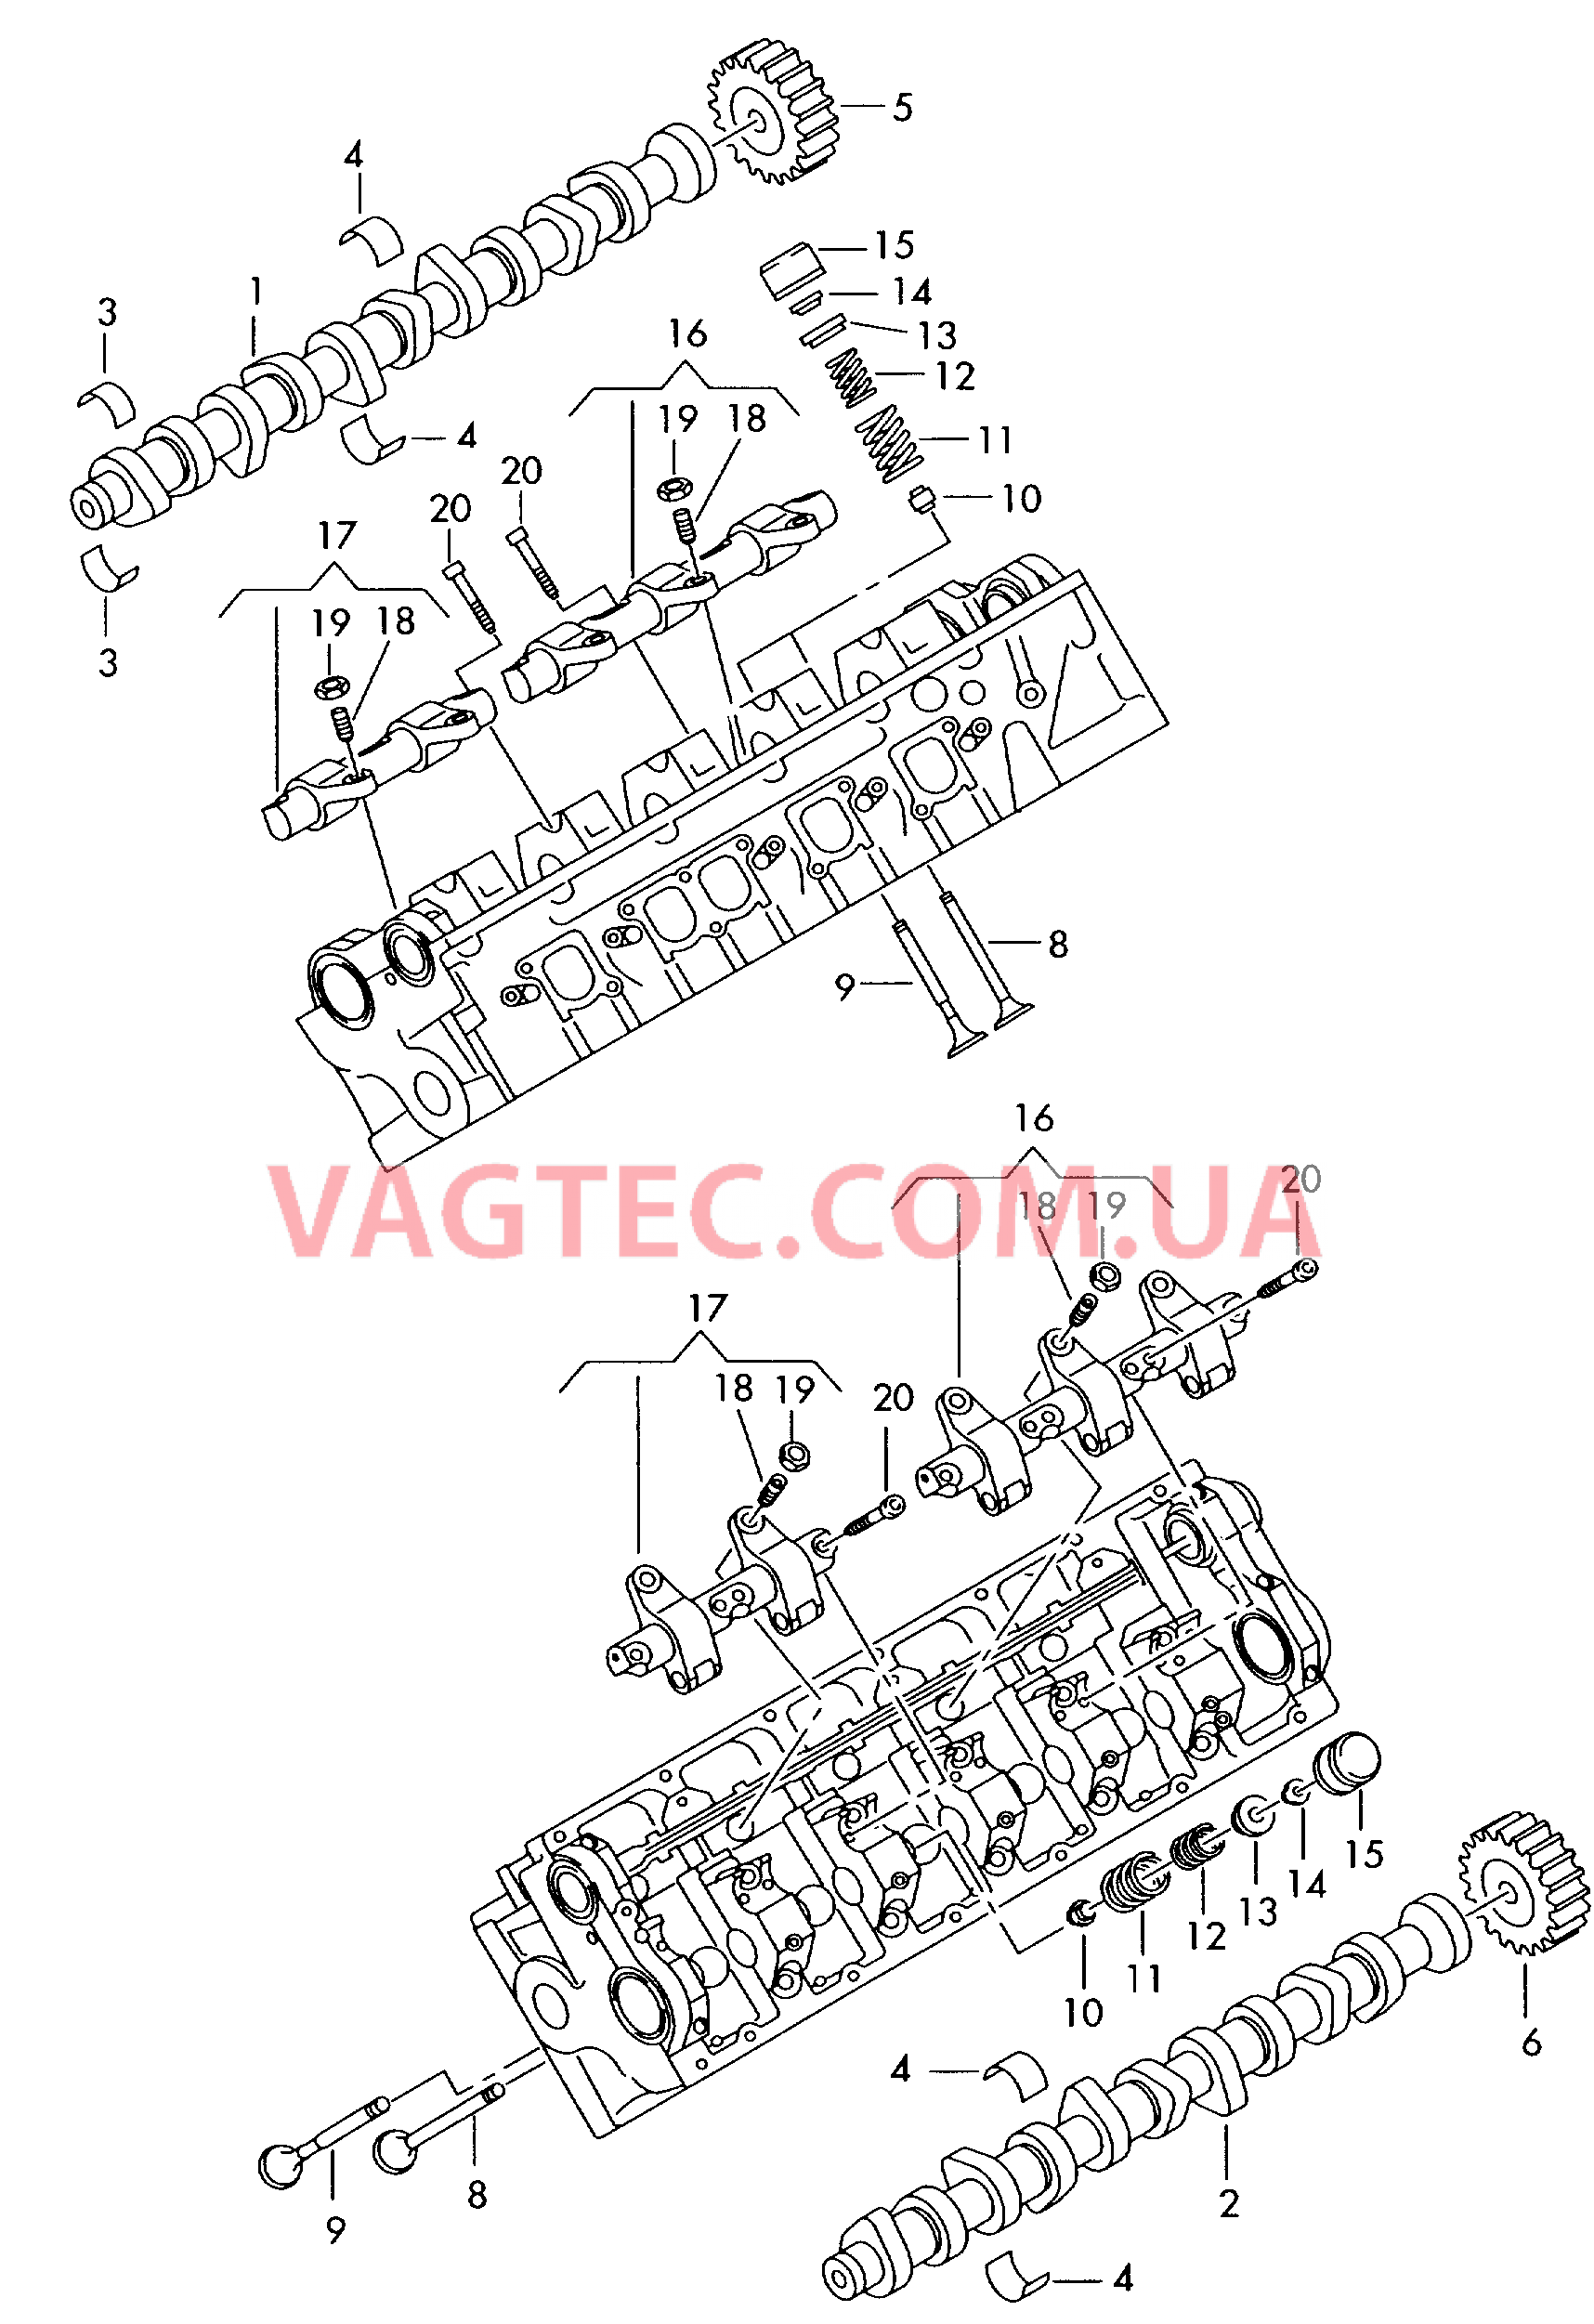 Распределительный вал, клапаны для VW TOUAREG   для VOLKSWAGEN Touareg 2003